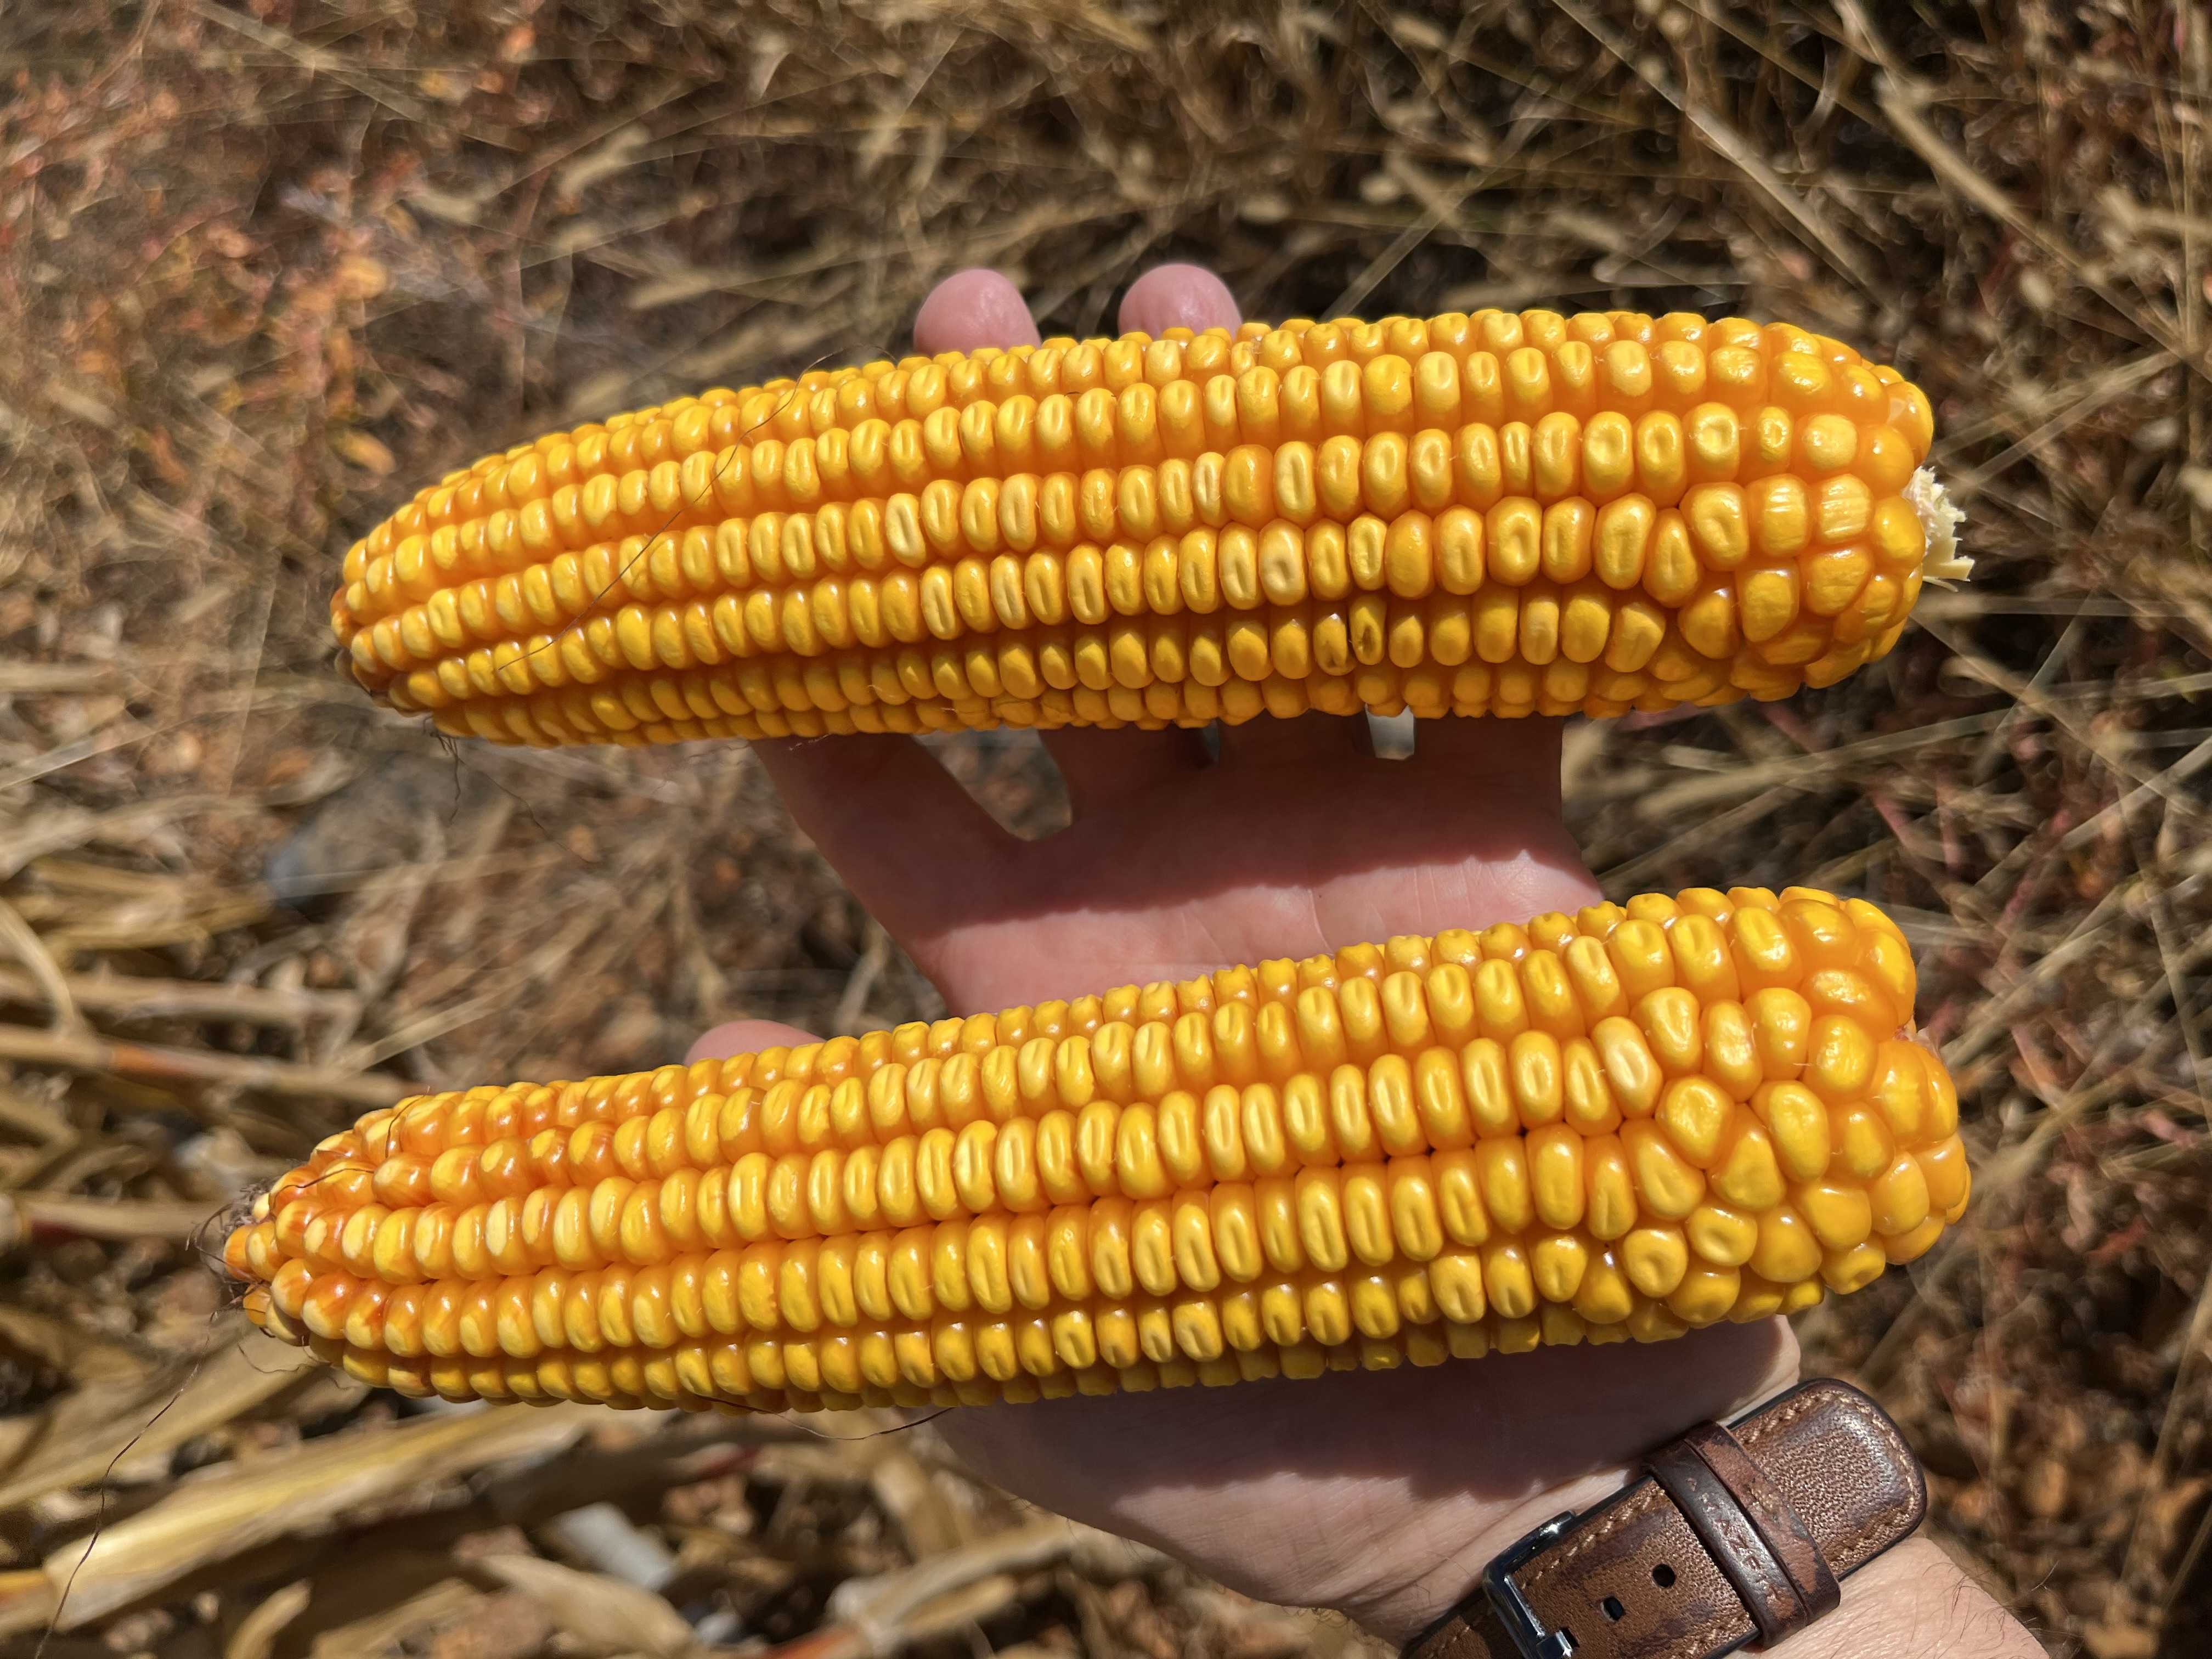 Ensayo en maíz en León con Polysulphate aumenta la producción